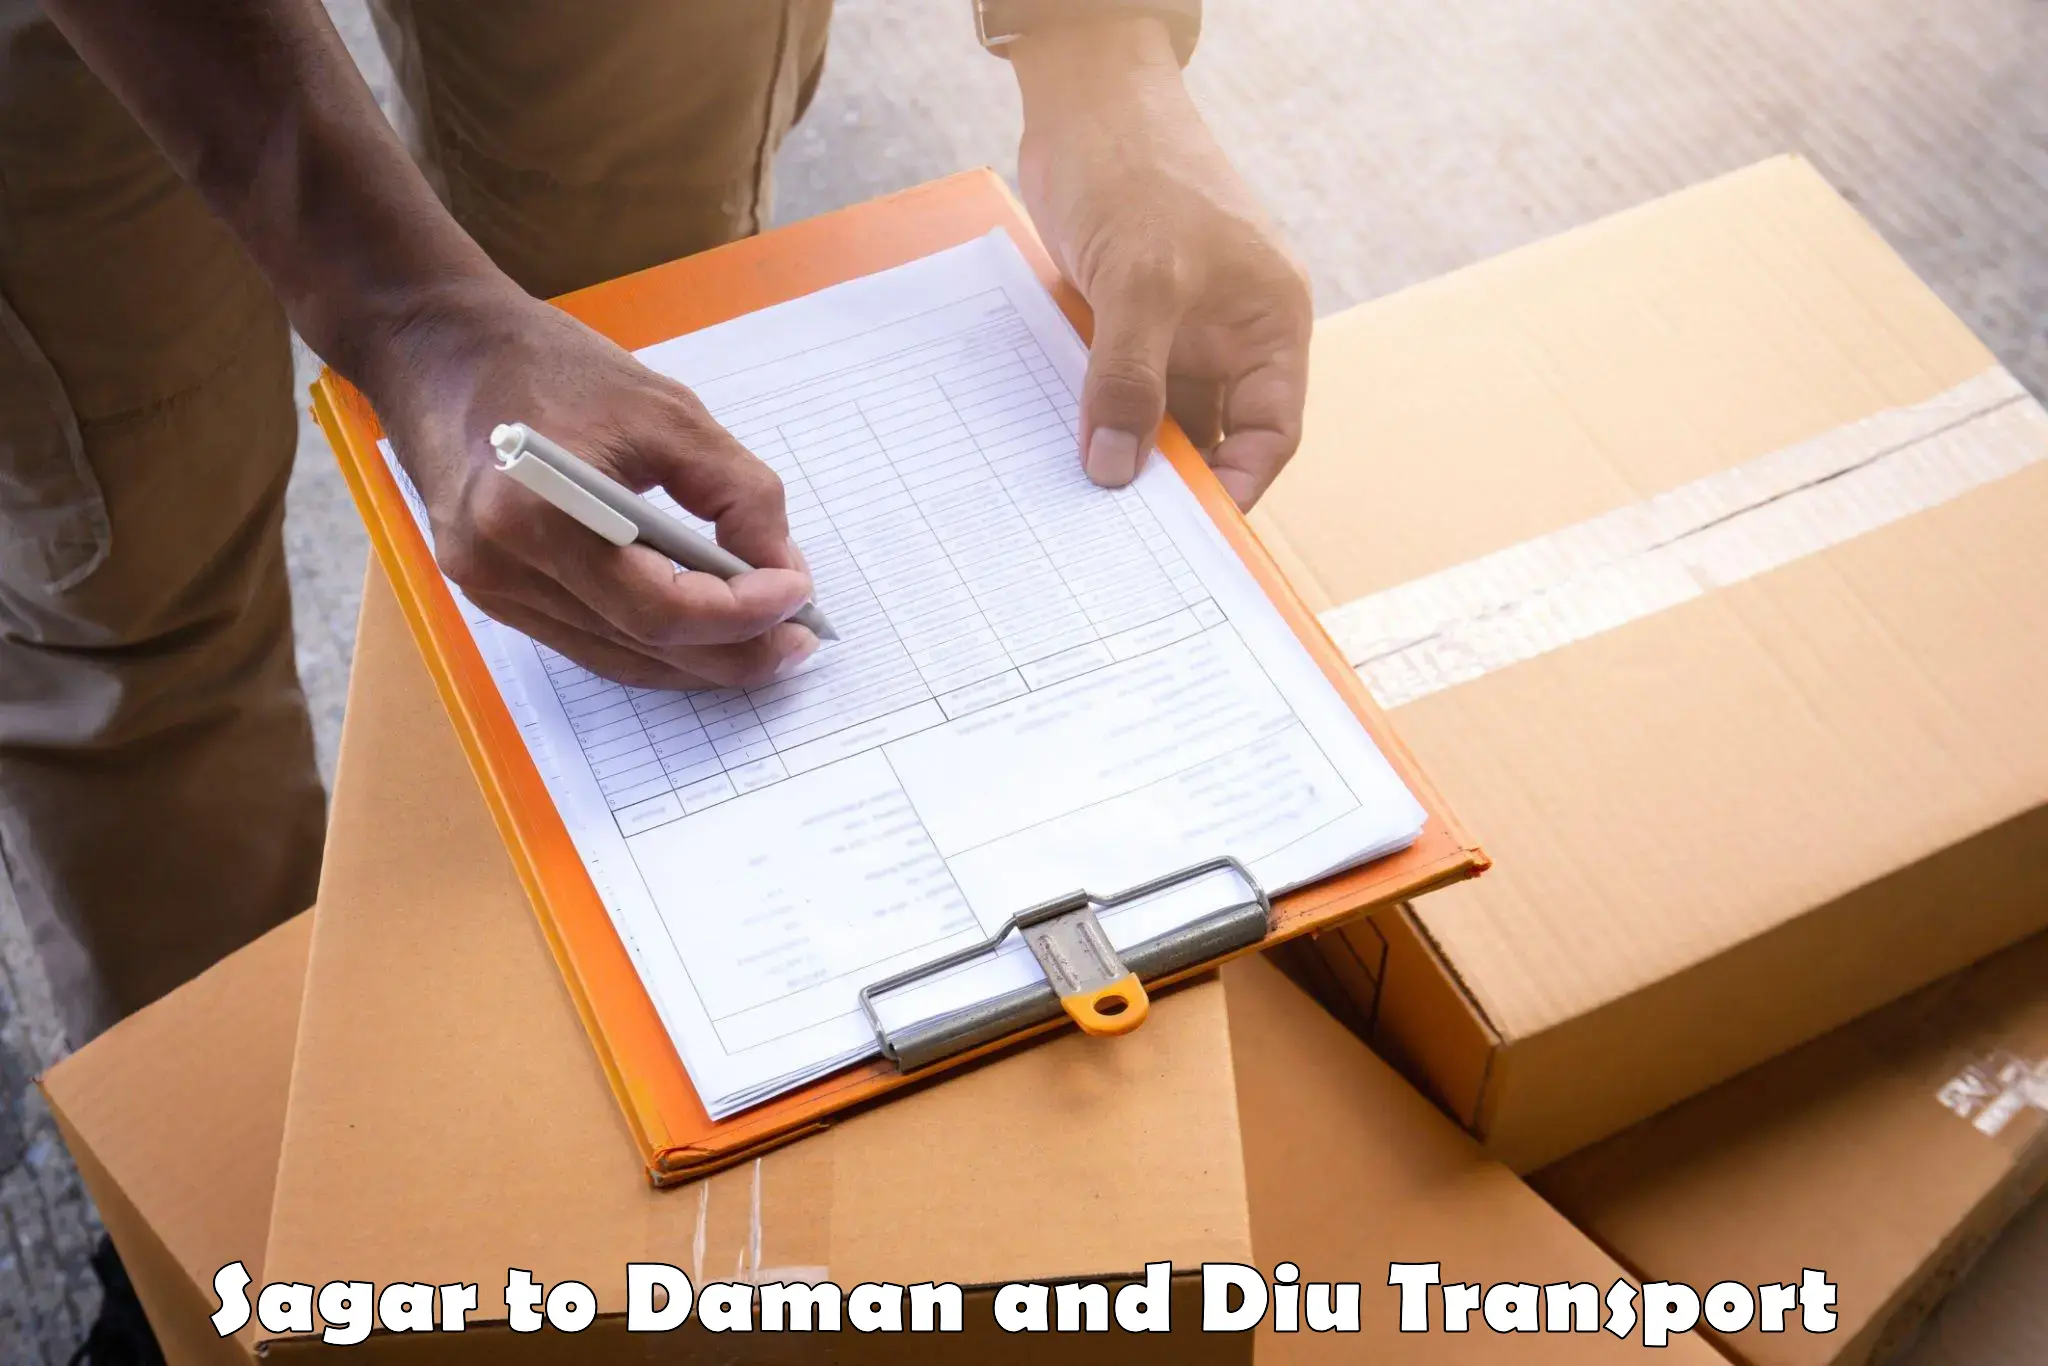 Container transportation services Sagar to Daman and Diu